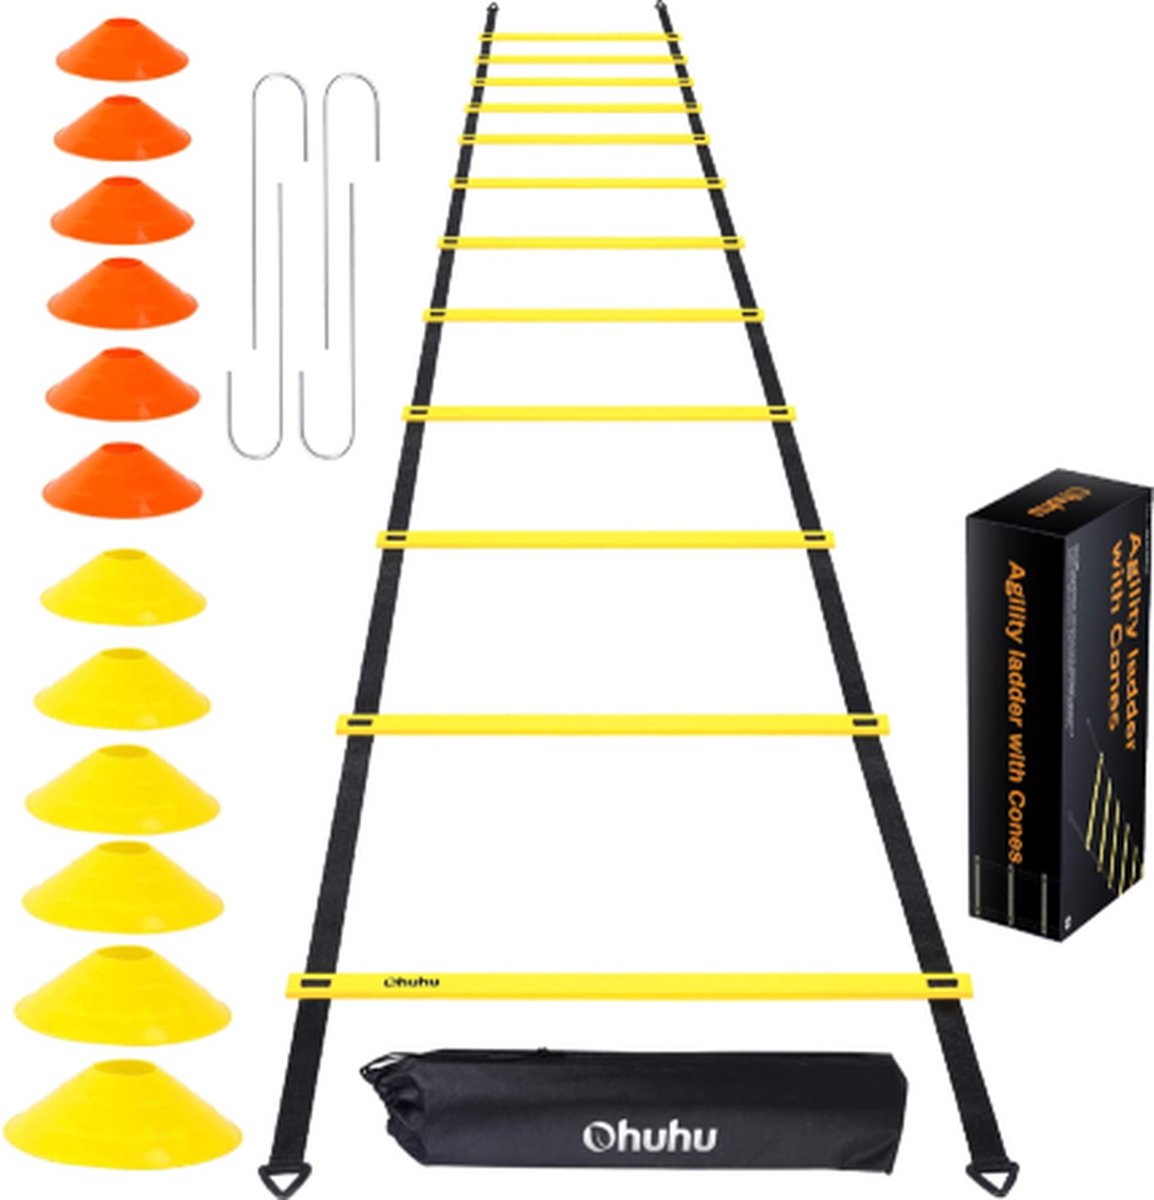 Flightmode - Ohuhu Beweegbare ladder, 12 snelwerkscheutsen met 12 veldkegels en 4 haringen, voetbal-werkuitrusting voor voetbal en voetbal